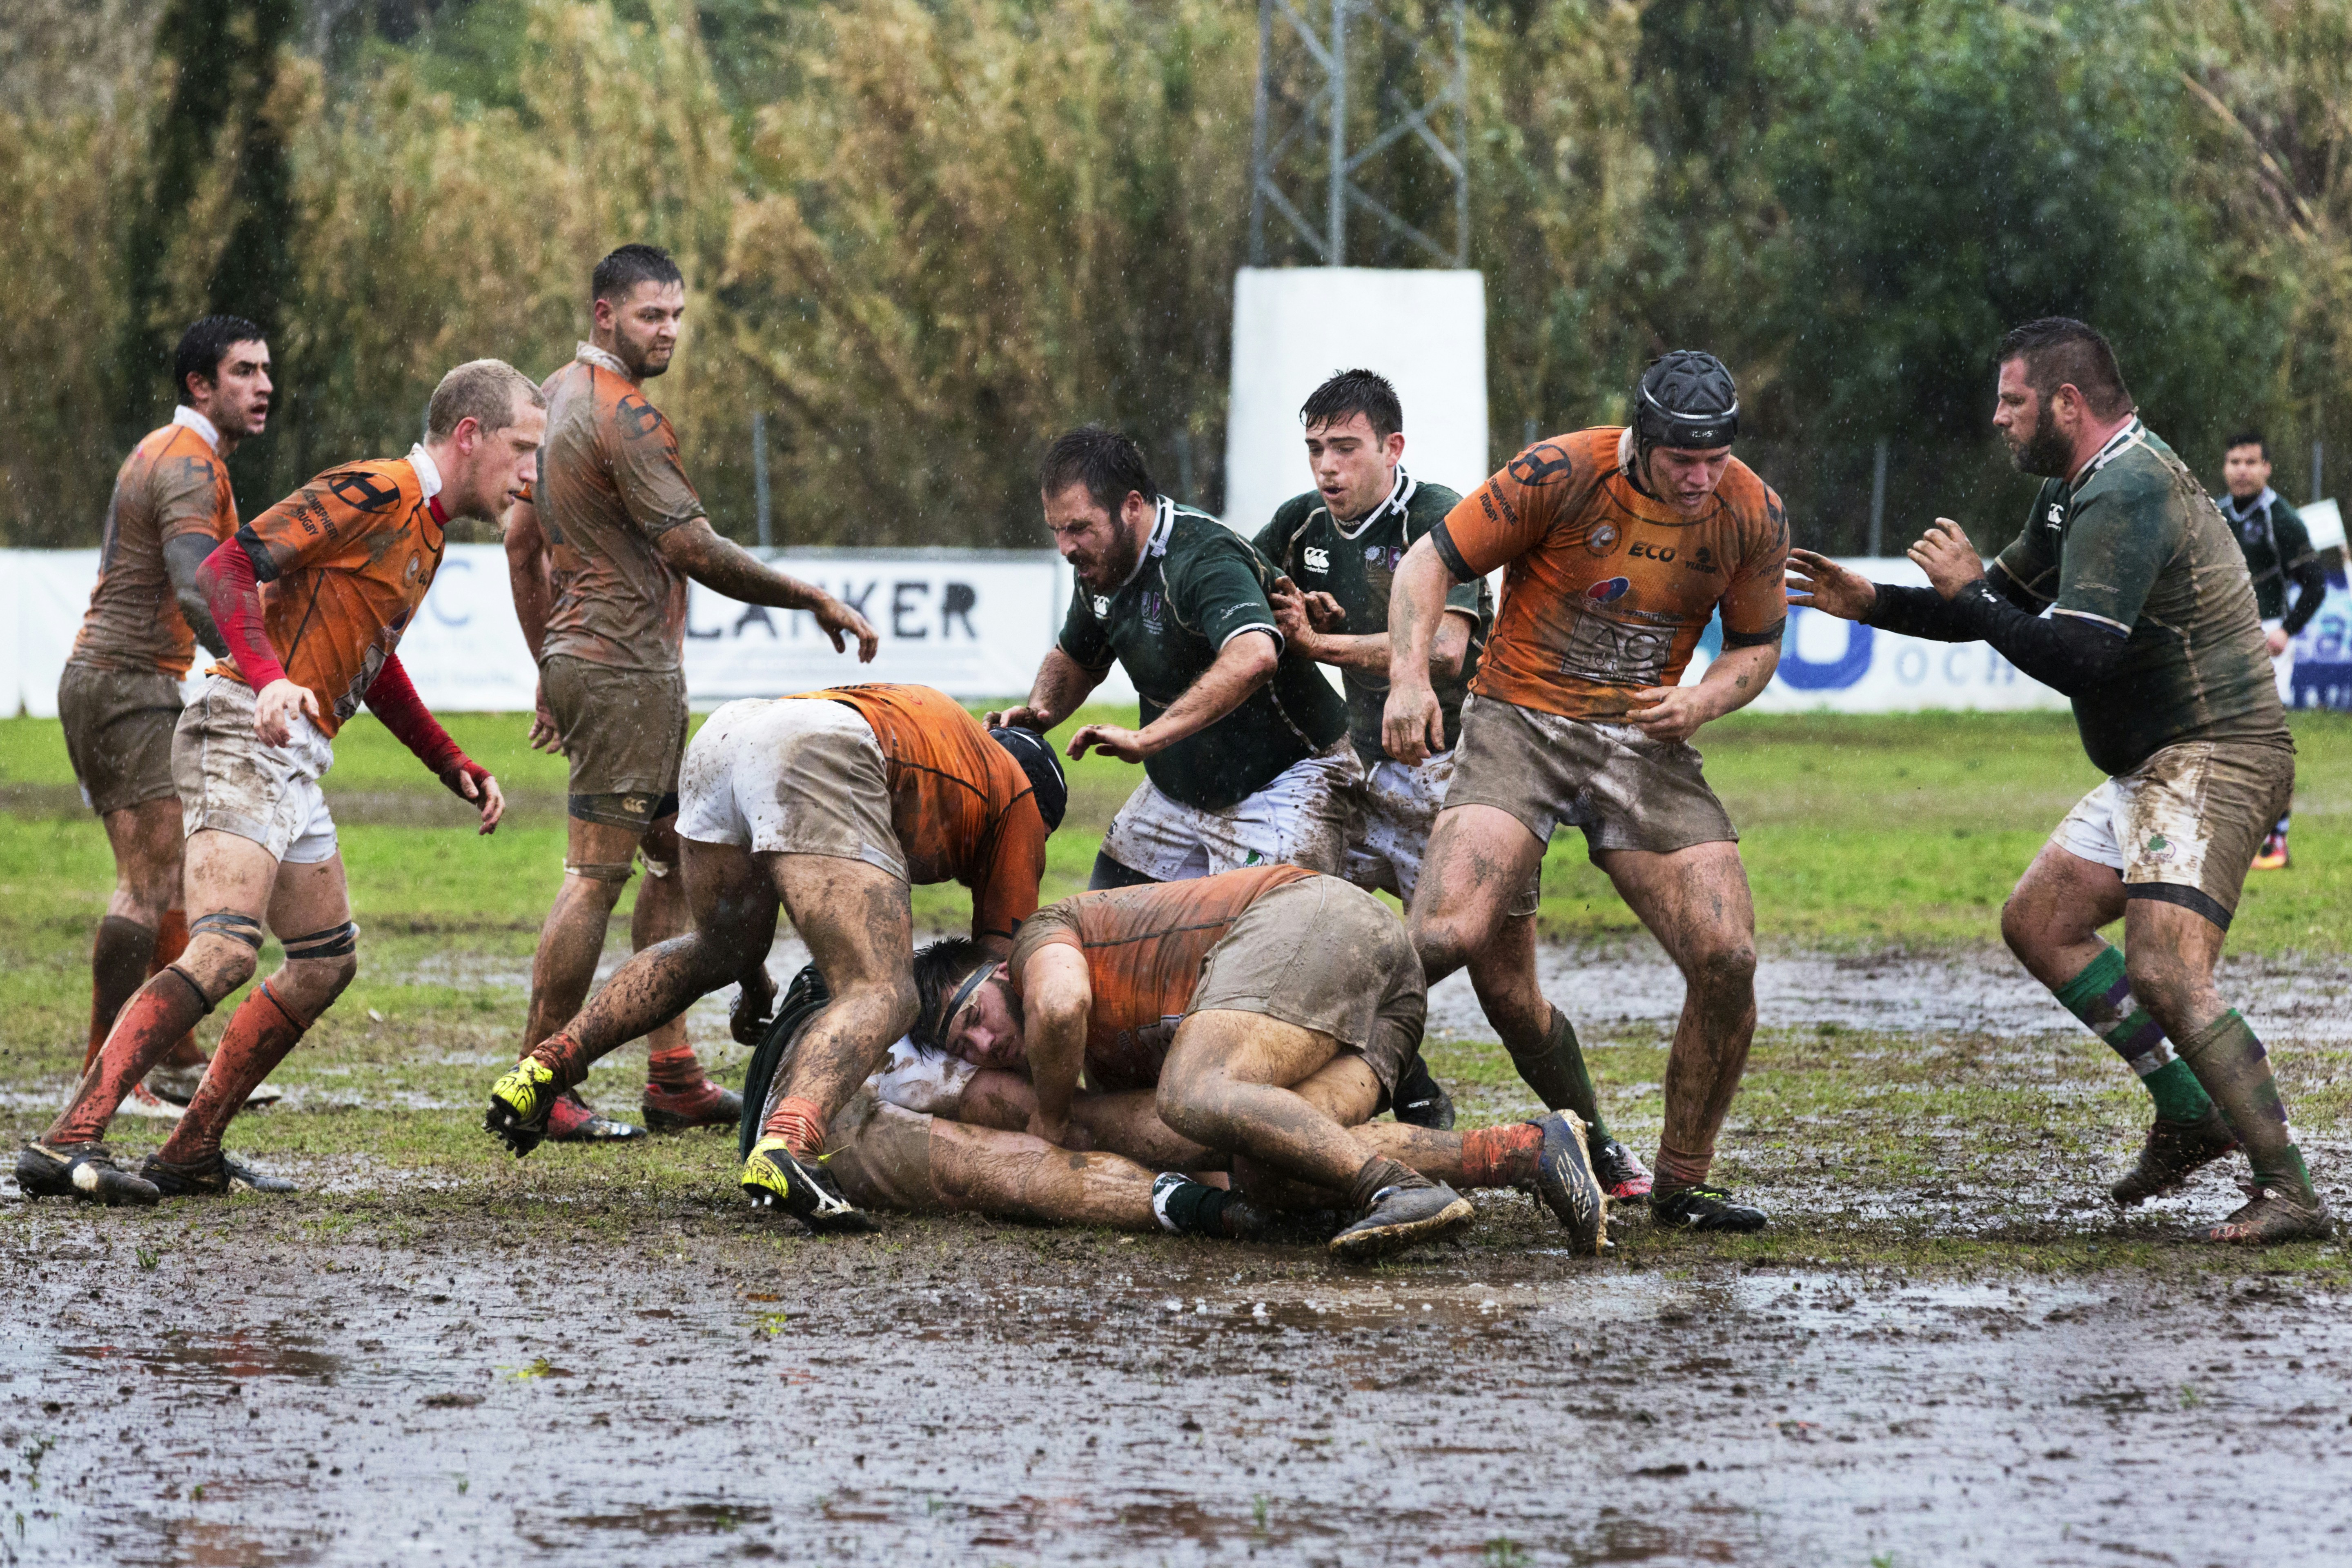 Ni la lluvia ni el barro fueron obstáculos para que estos jugadores nos brindaran un gran partido de rugby demostrando una magnifica preparación física y mental. Esto es RUGBY.